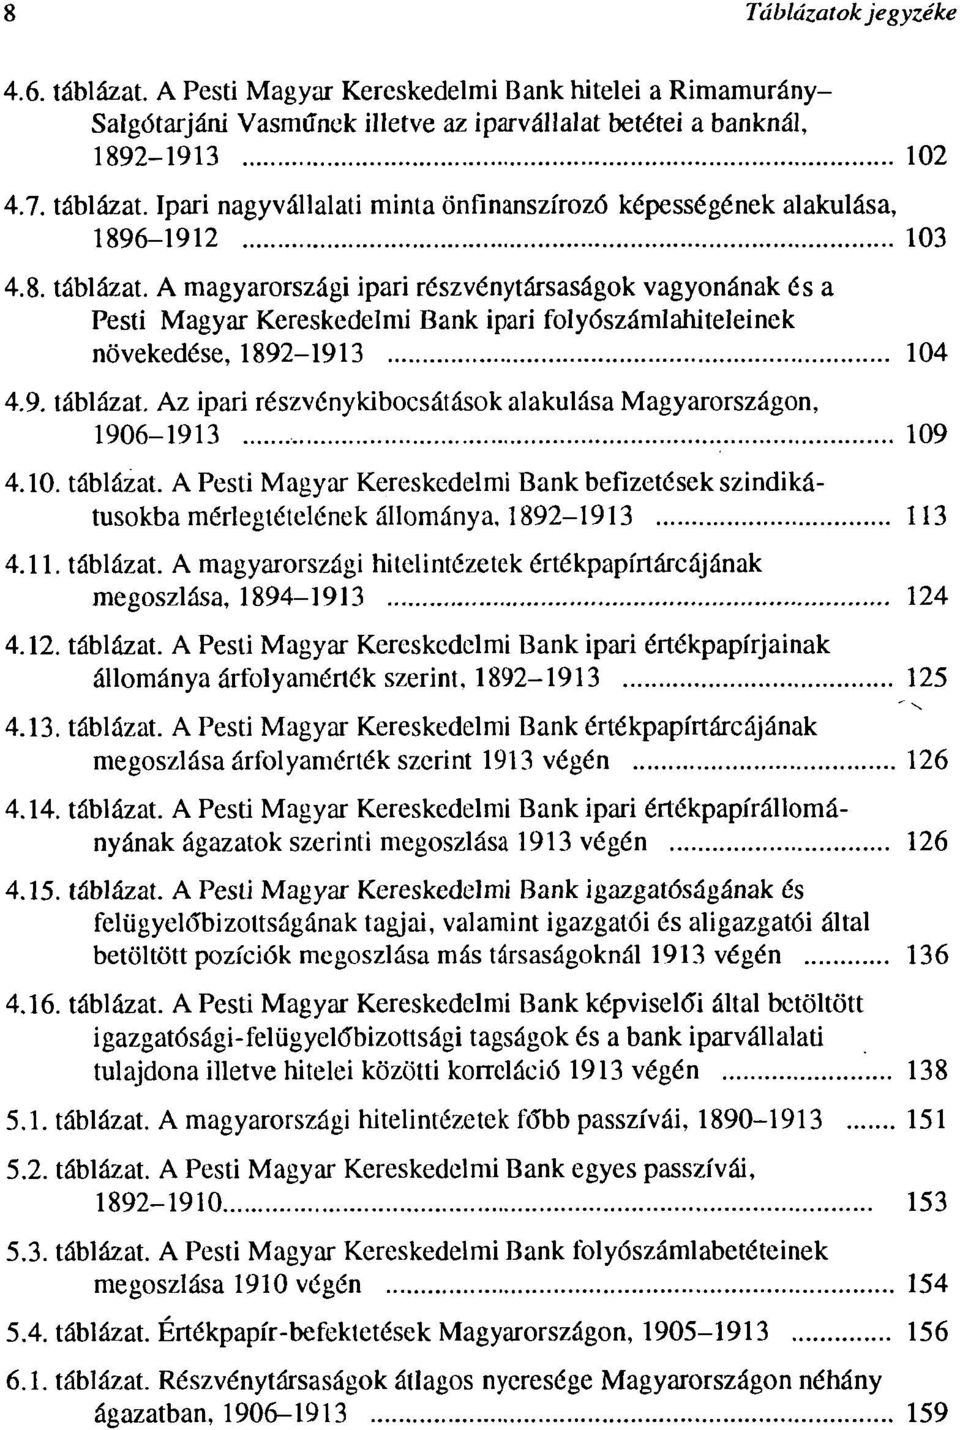 10. táblázat. A Pesti Magyar Kereskedelmi Bank befizetések szindikátusokba mérlegtételének állománya, 1892-1913 113 4.11. táblázat. A magyarországi hitelintézetek értékpapírtárcájának megoszlása, 1894-1913 124 4.